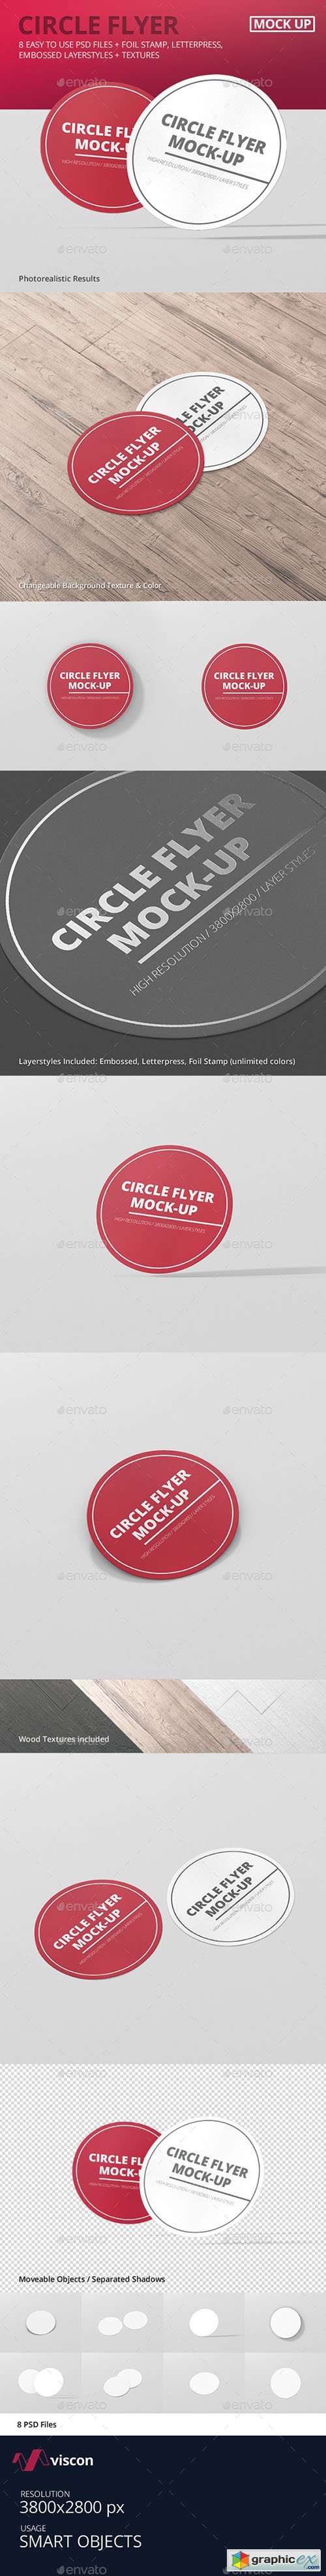 Circle Flyer Mockup